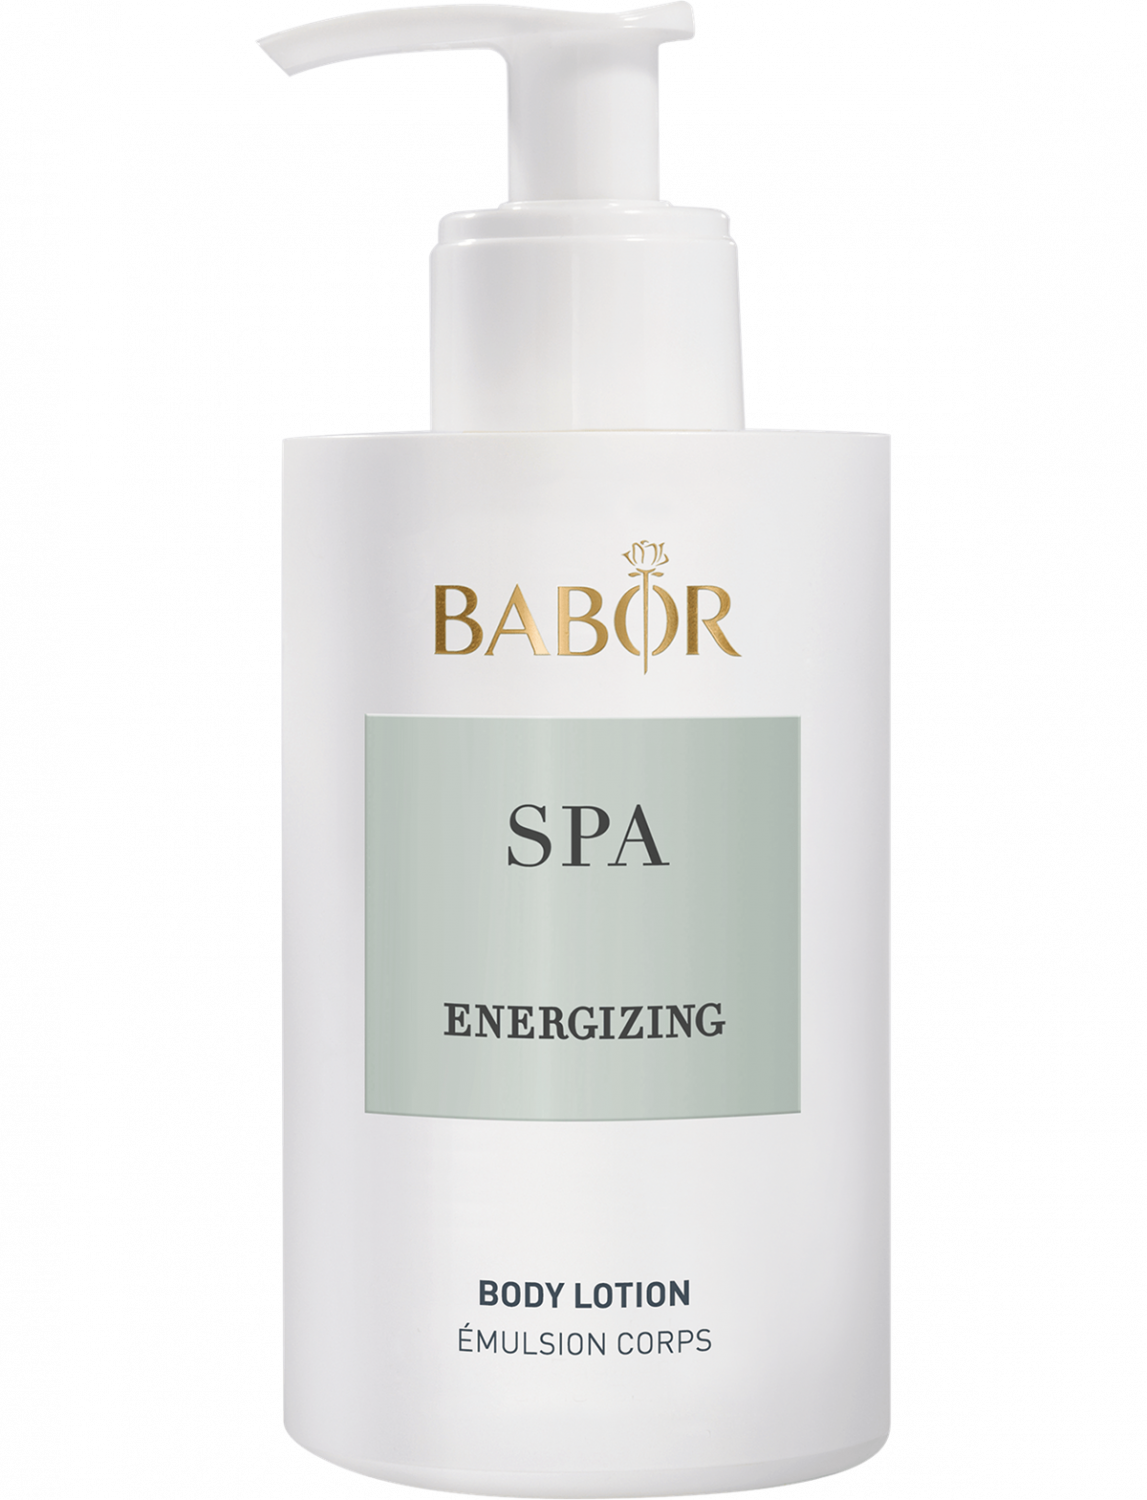 BABOR SPA Energizing Body Lotion 200ml - интернет-магазин профессиональной косметики Spadream, изображение 36566